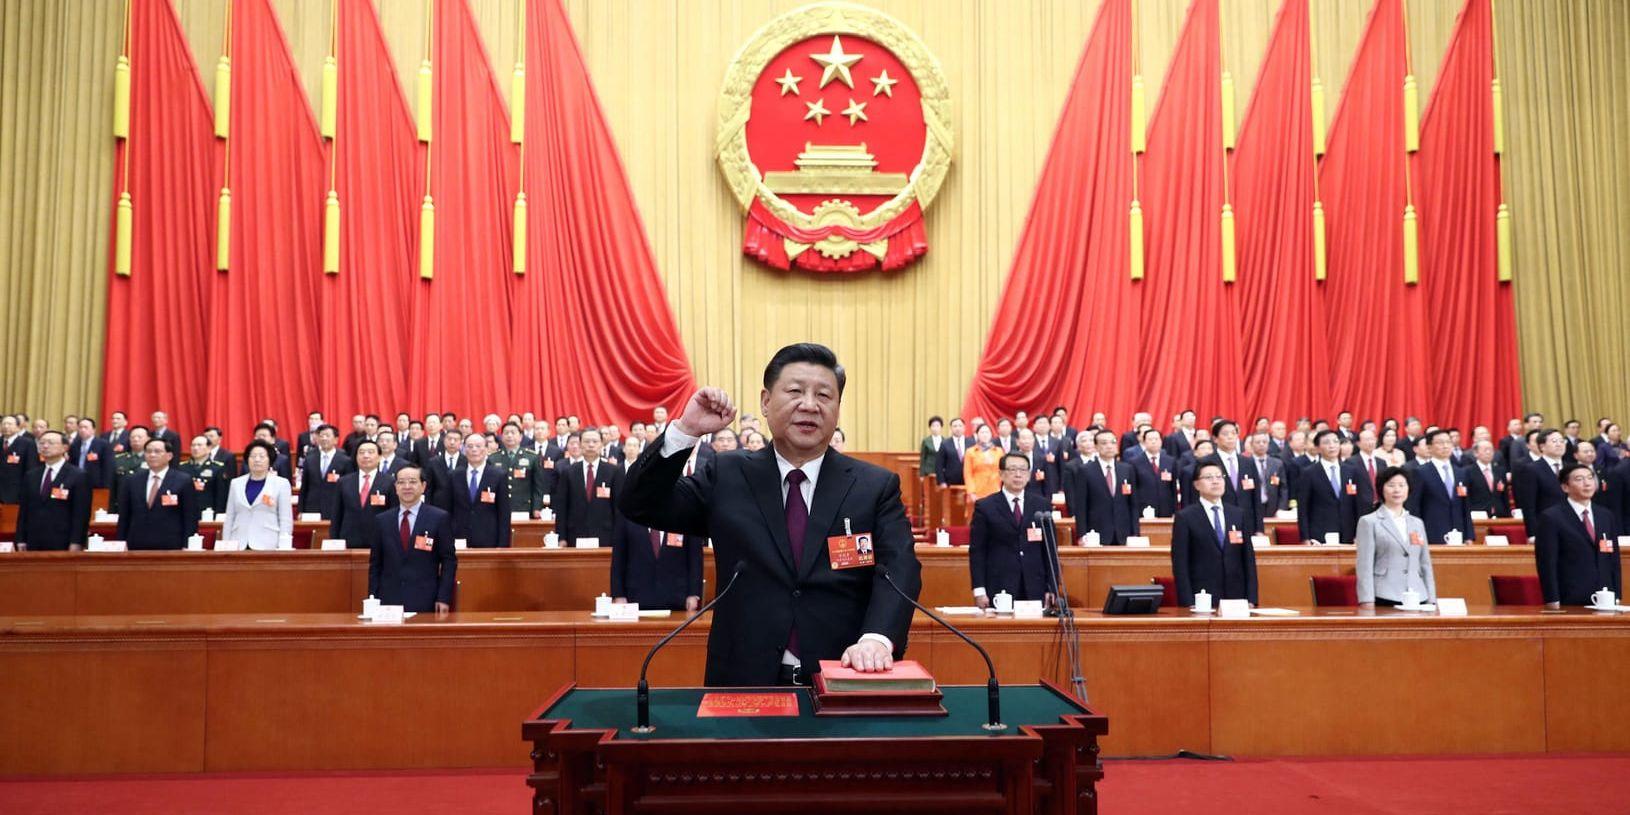 Kinas president svär eden till konstitutionen efter att han återvaldes för ytterligare en presidentperiod på lördagen.